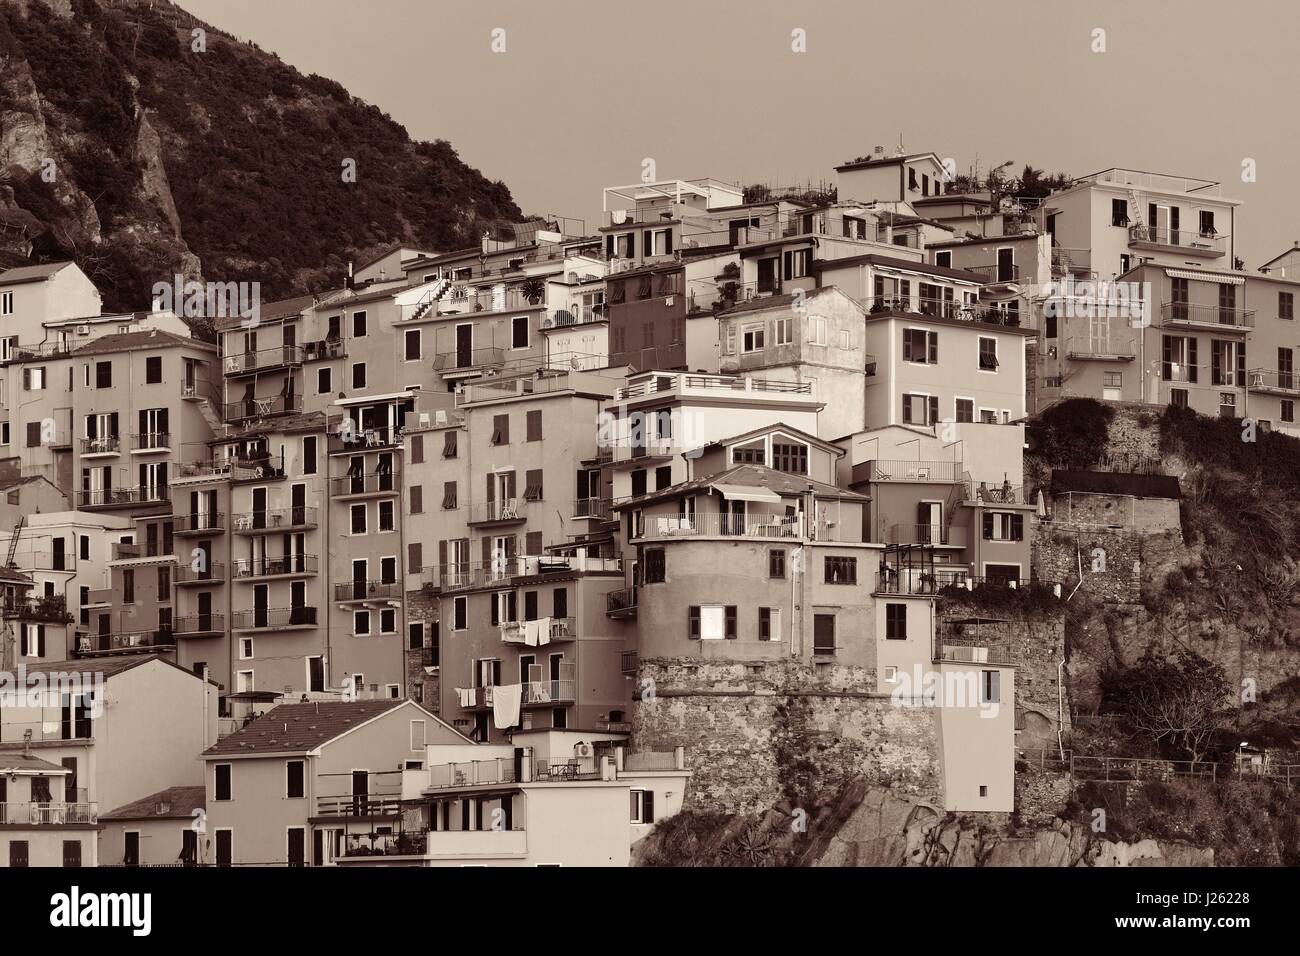 Stile Italiano edifici residente sulla scogliera a Manarola nelle Cinque Terre, Italia. Foto Stock